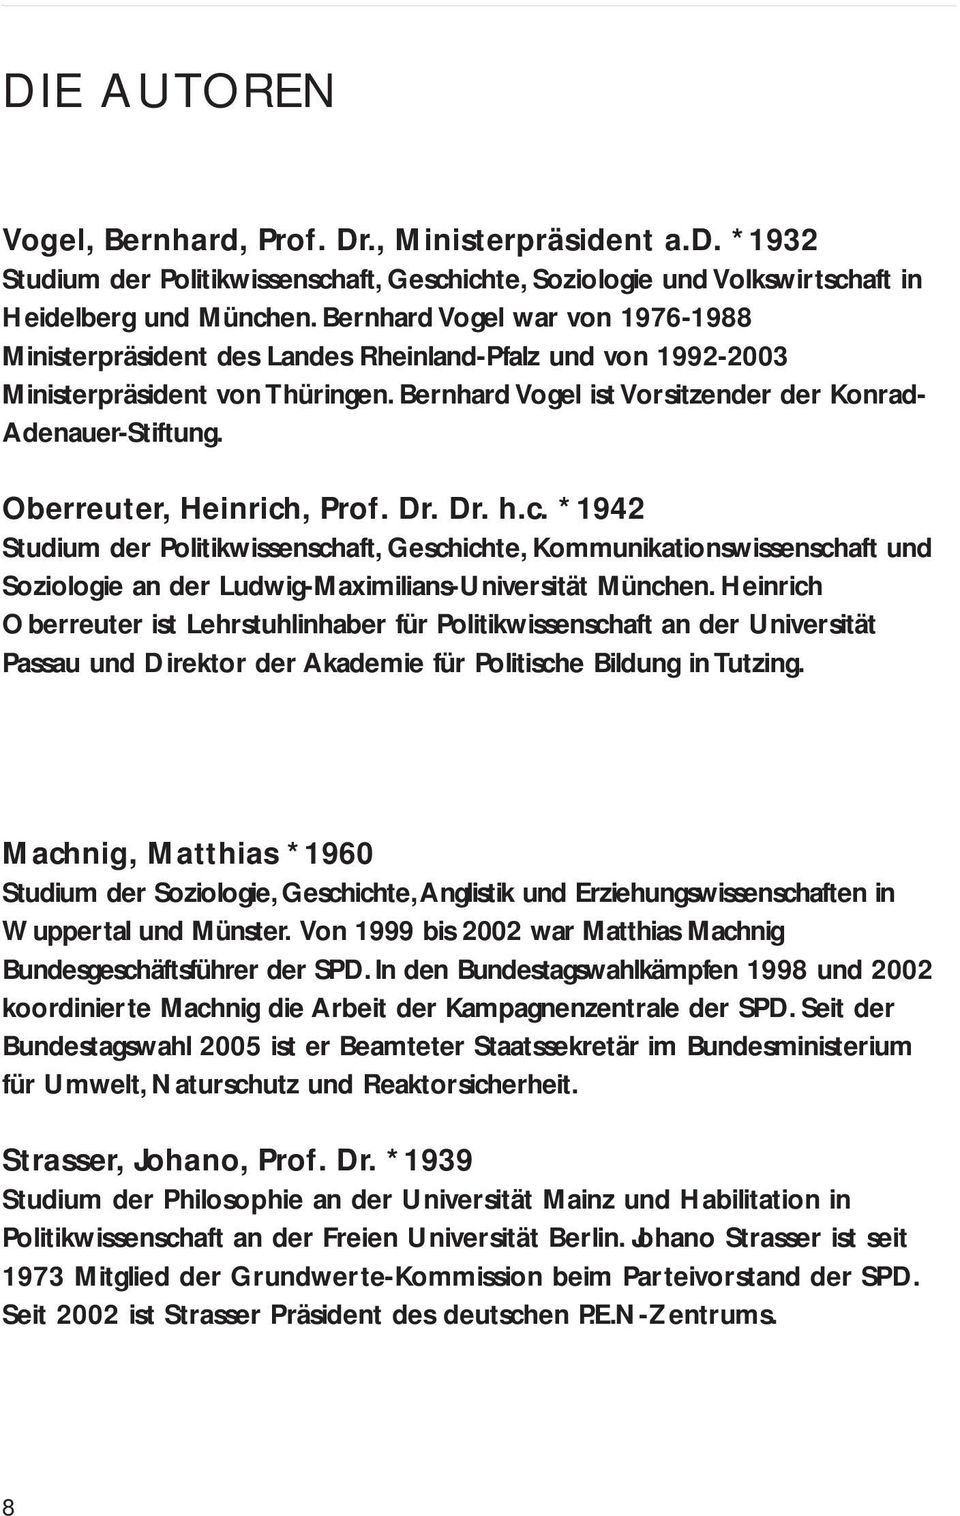 Oberreuter, Heinrich, Prof. Dr. Dr. h.c. *1942 Studium der Politikwissenschaft, Geschichte, Kommunikationswissenschaft und Soziologie an der Ludwig-Maximilians-Universität München.